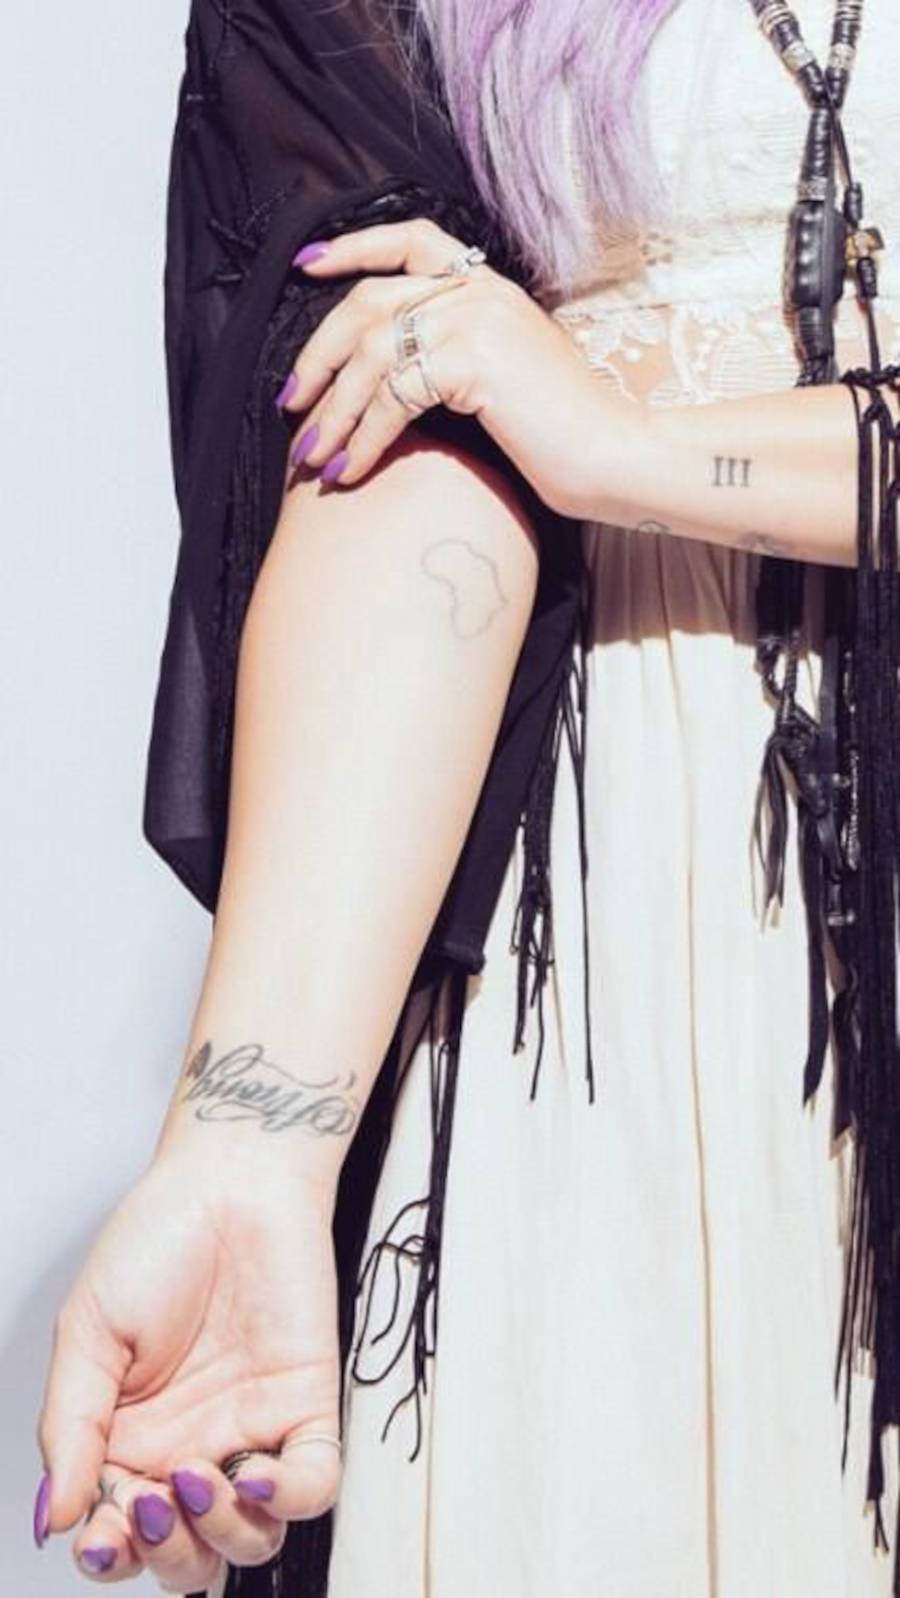 Foto da tatuagem de Demi com o continente africano